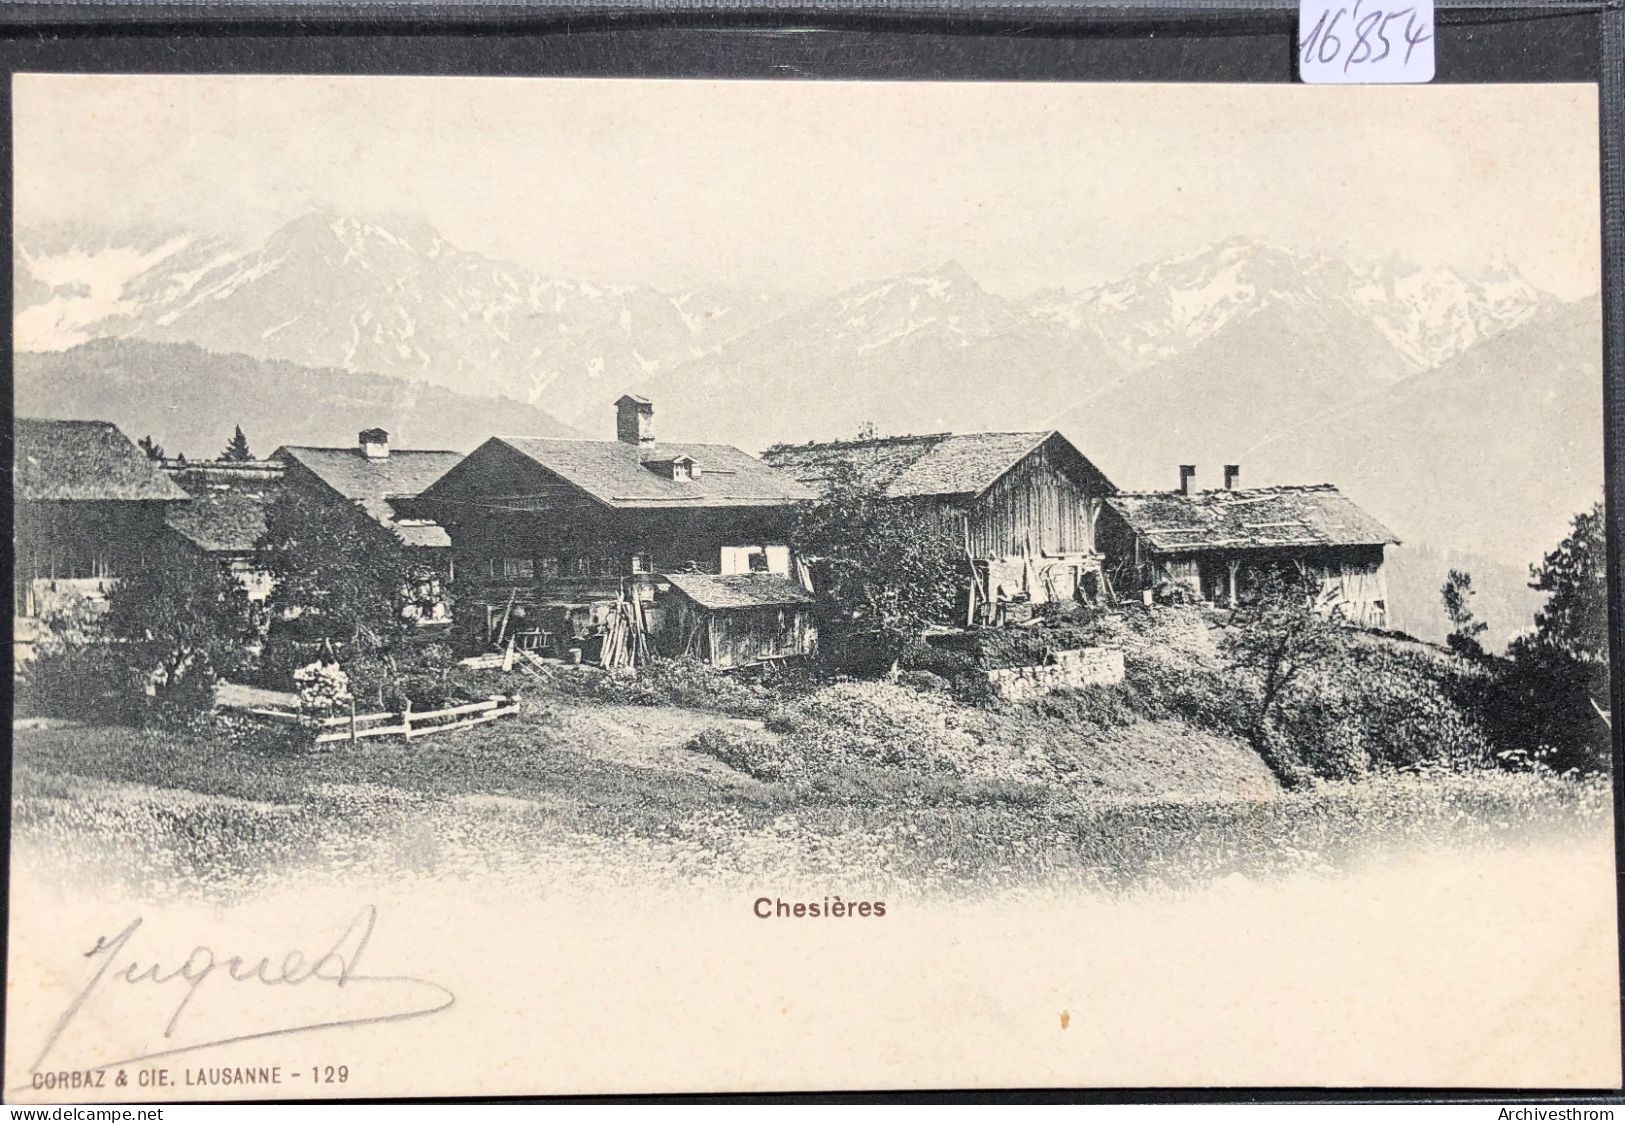 Chesières (Vaud) - Les Premiers Chalets, Vers 1903 (16'854) - Ollon